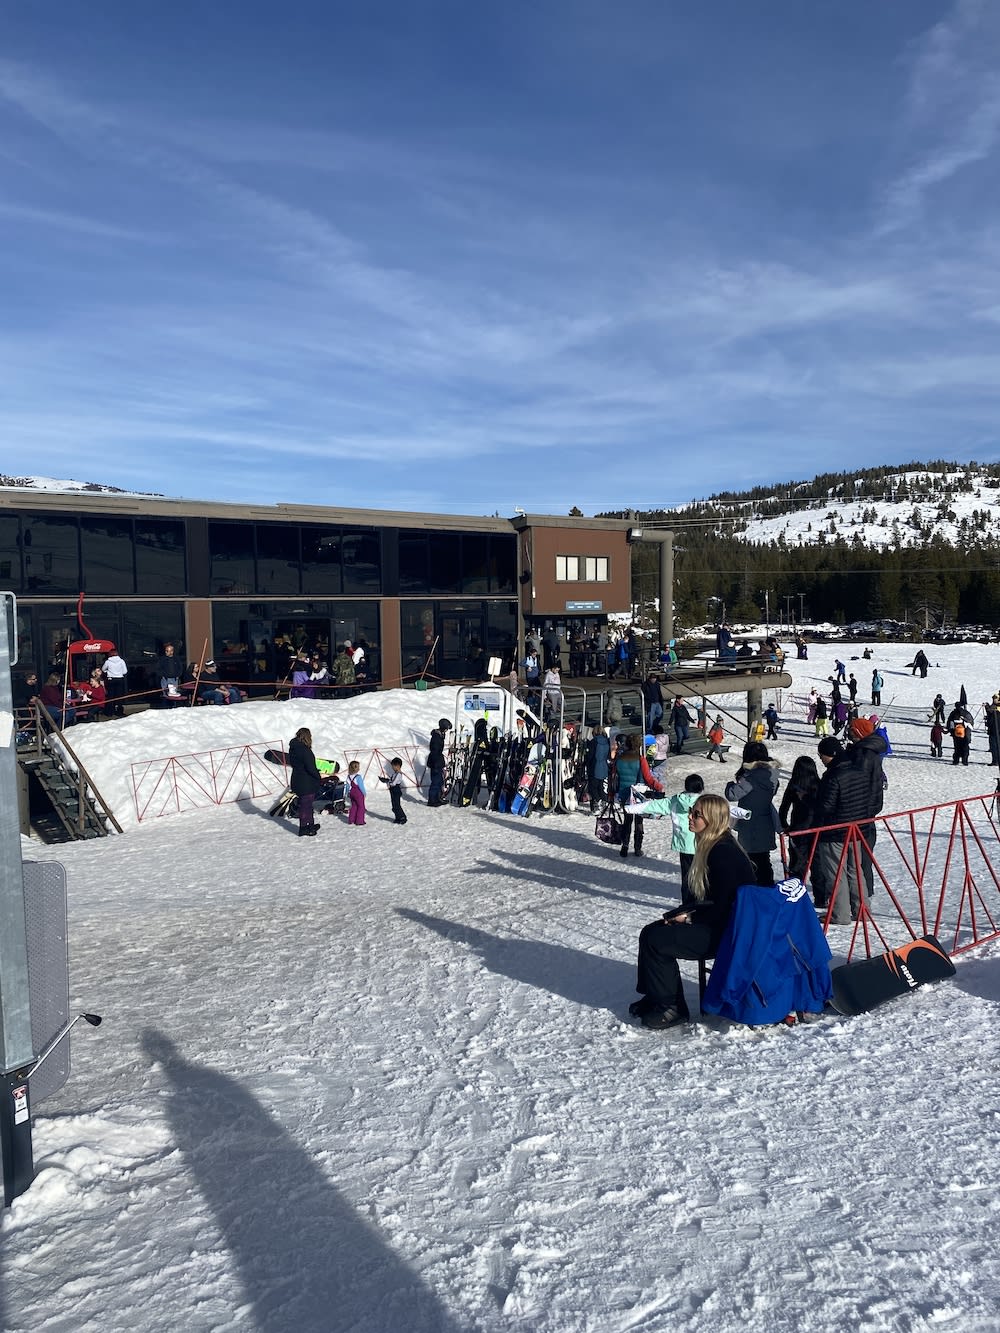 Tips for Visiting Soda Springs Ski Resort